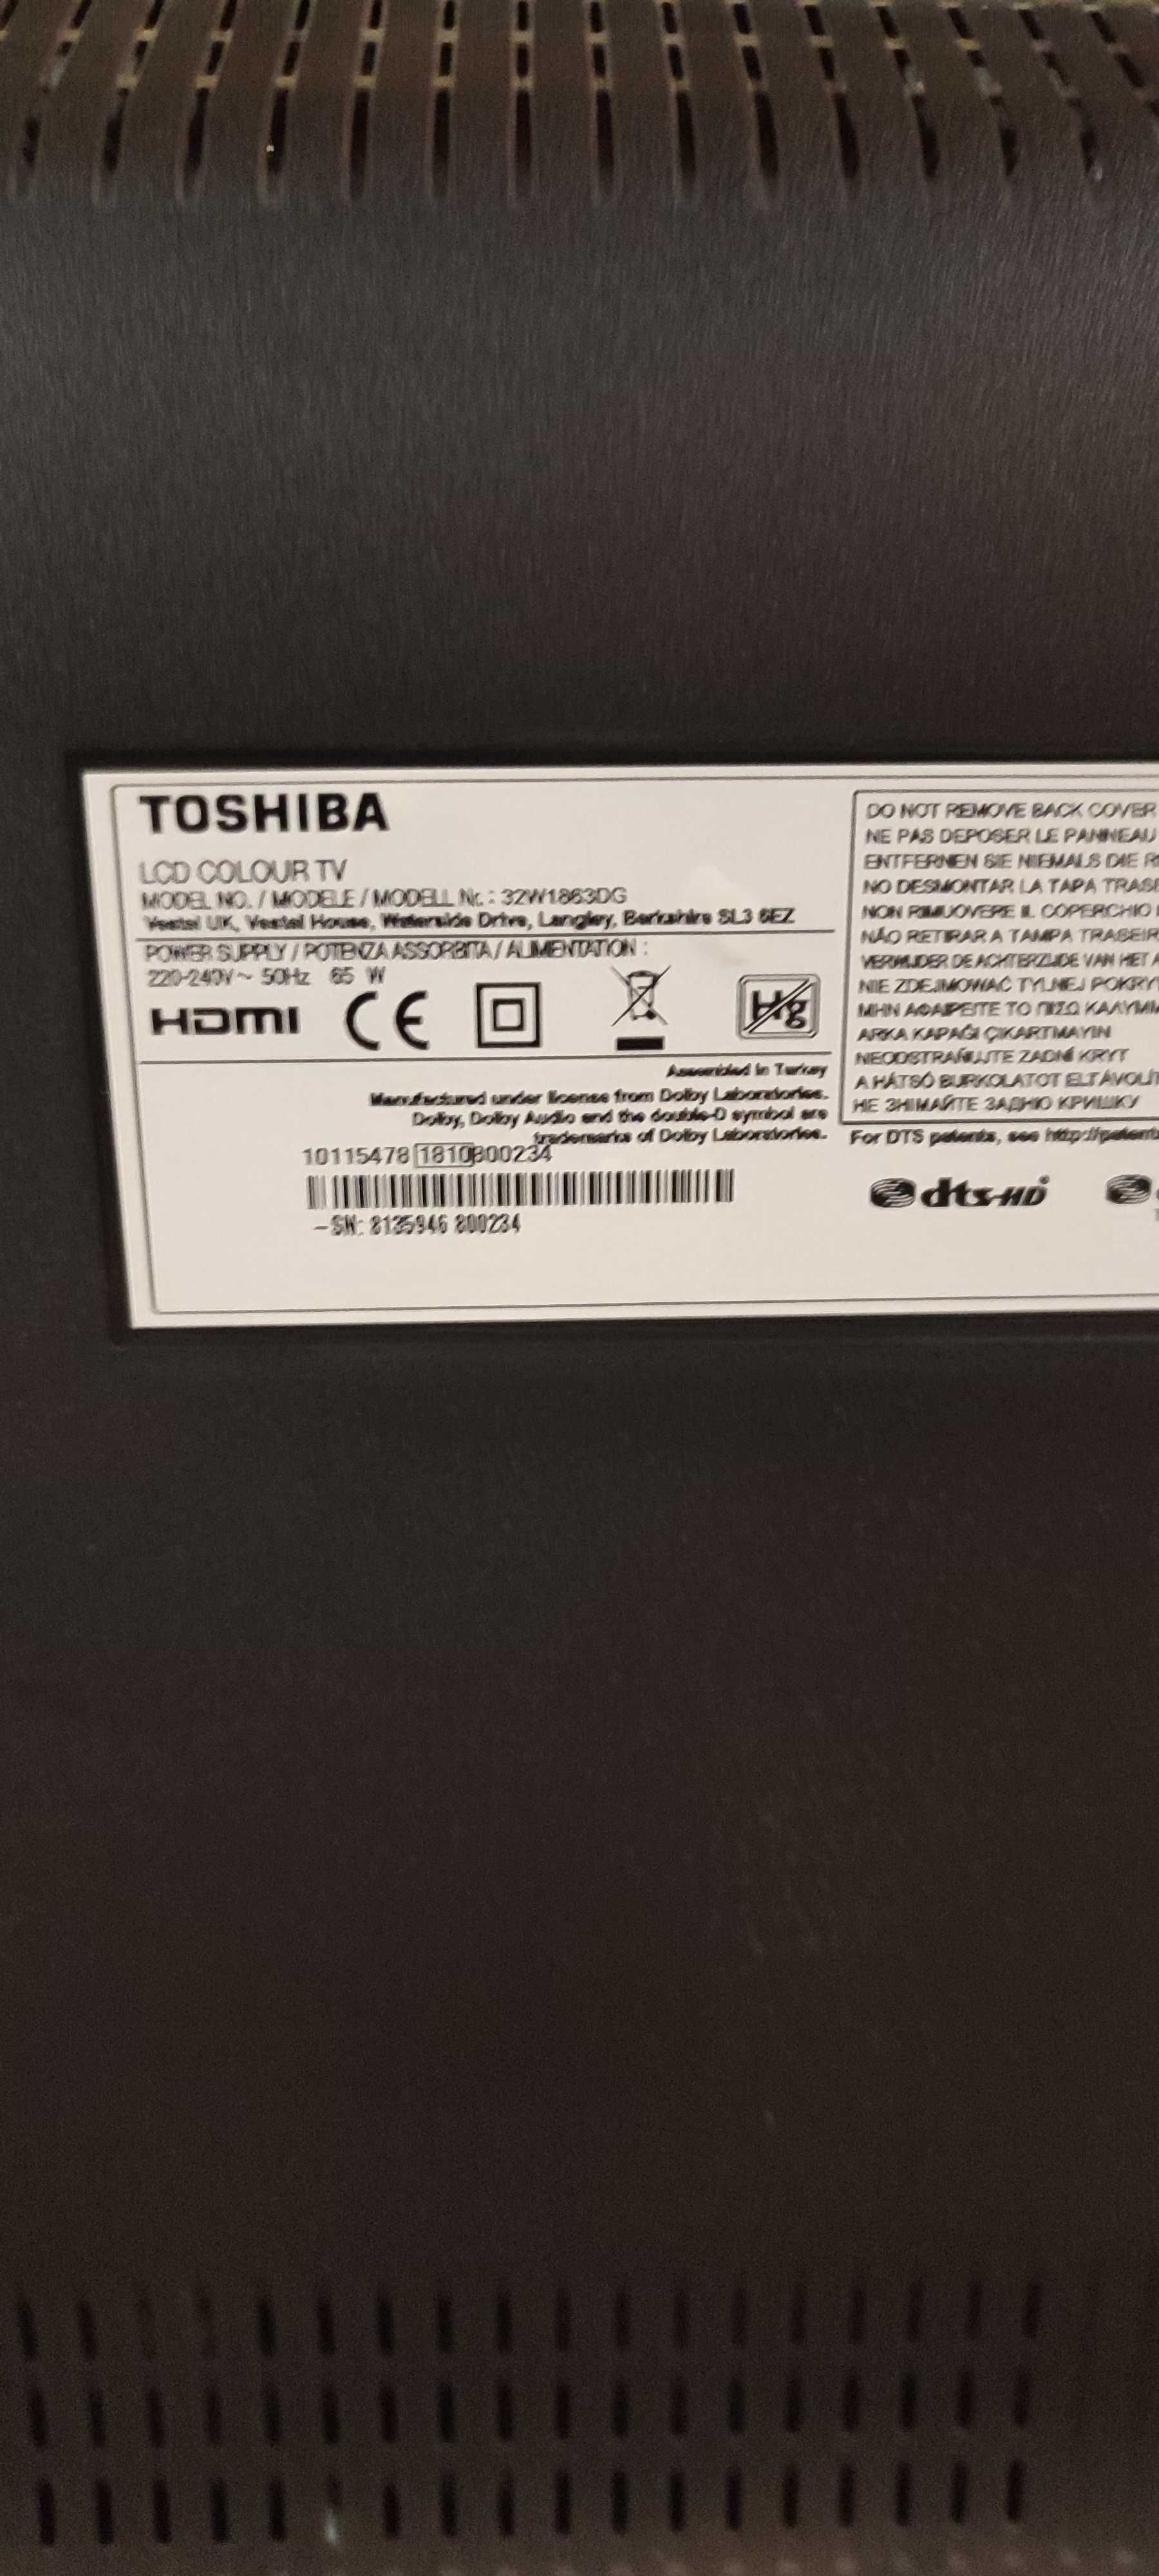 Toshiba 32W1863DG / Vestel